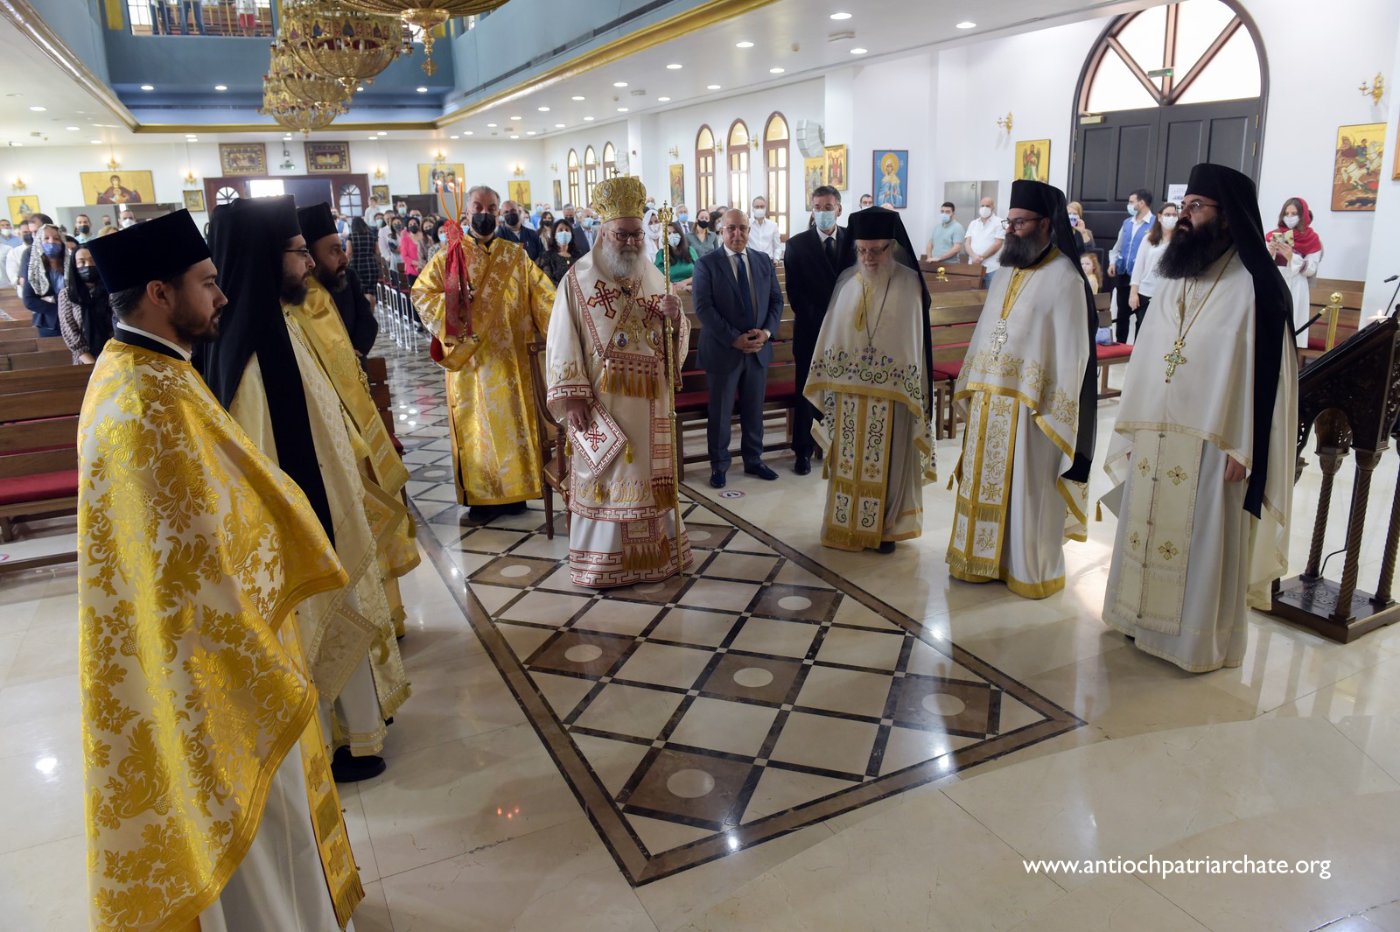 Le patriarche Jean X a présidé la divine liturgie à Dubaï